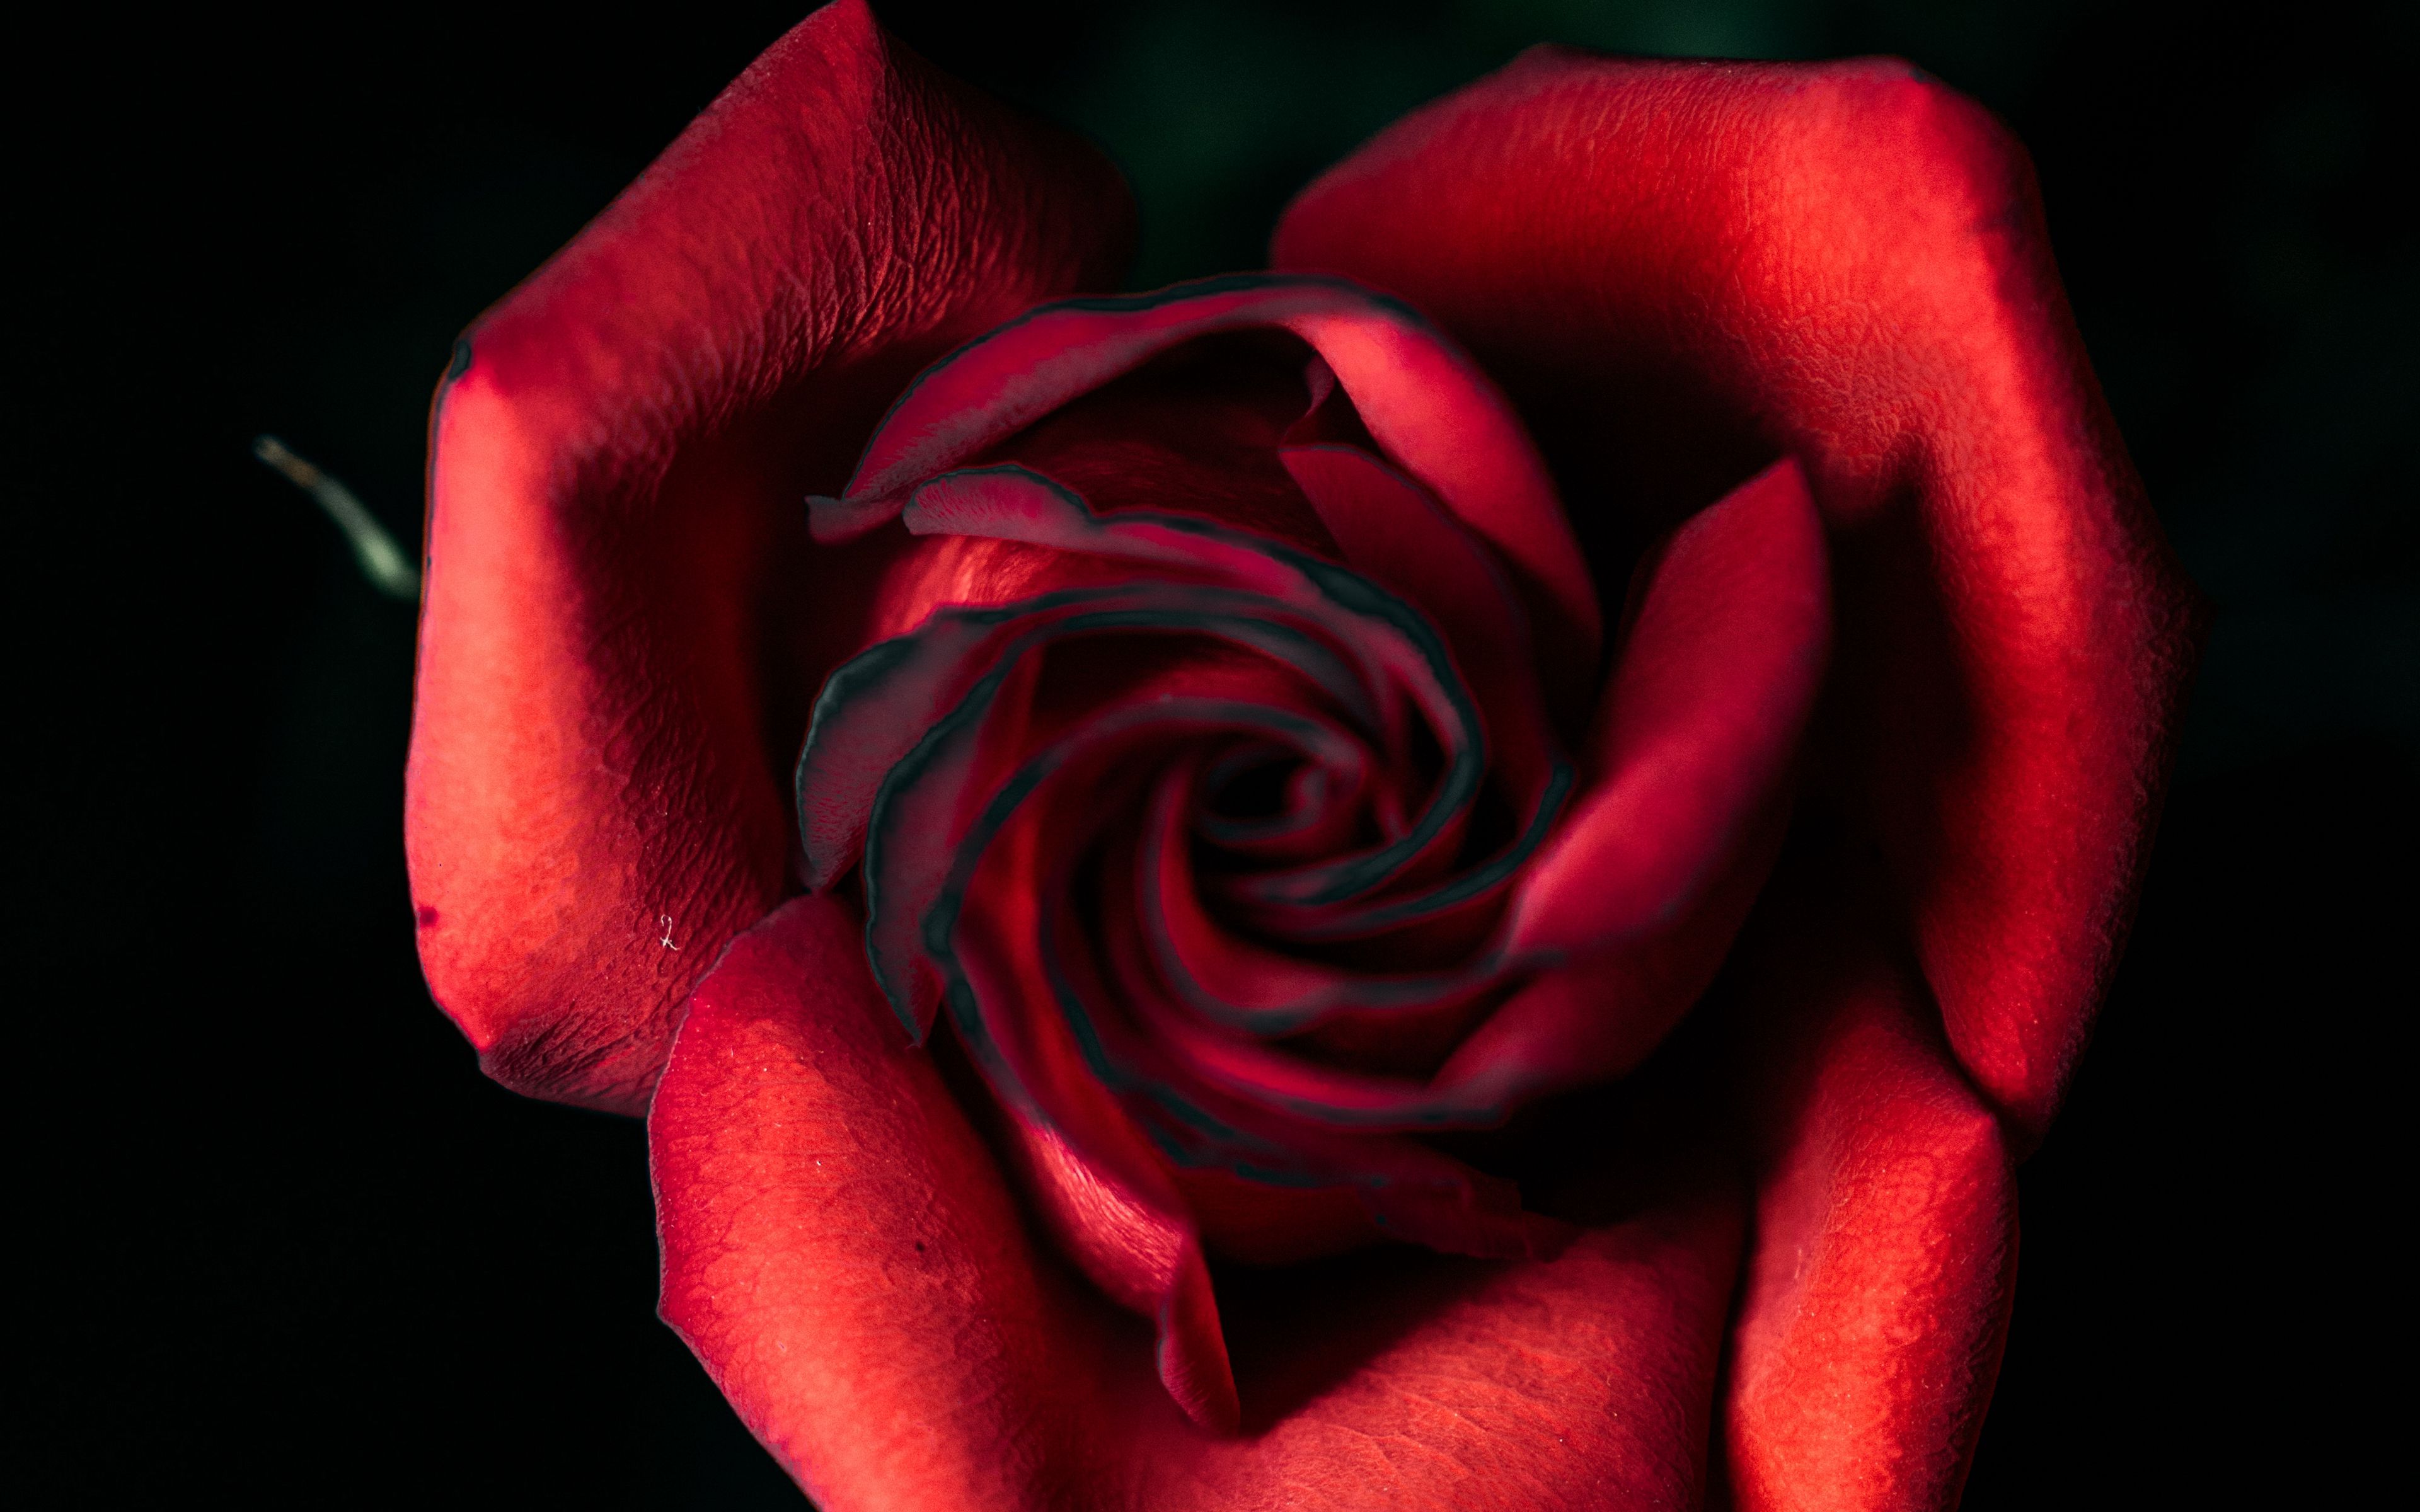 Download wallpaper 3840x2400 rose, red, bud, petals, closeup 4k ultra